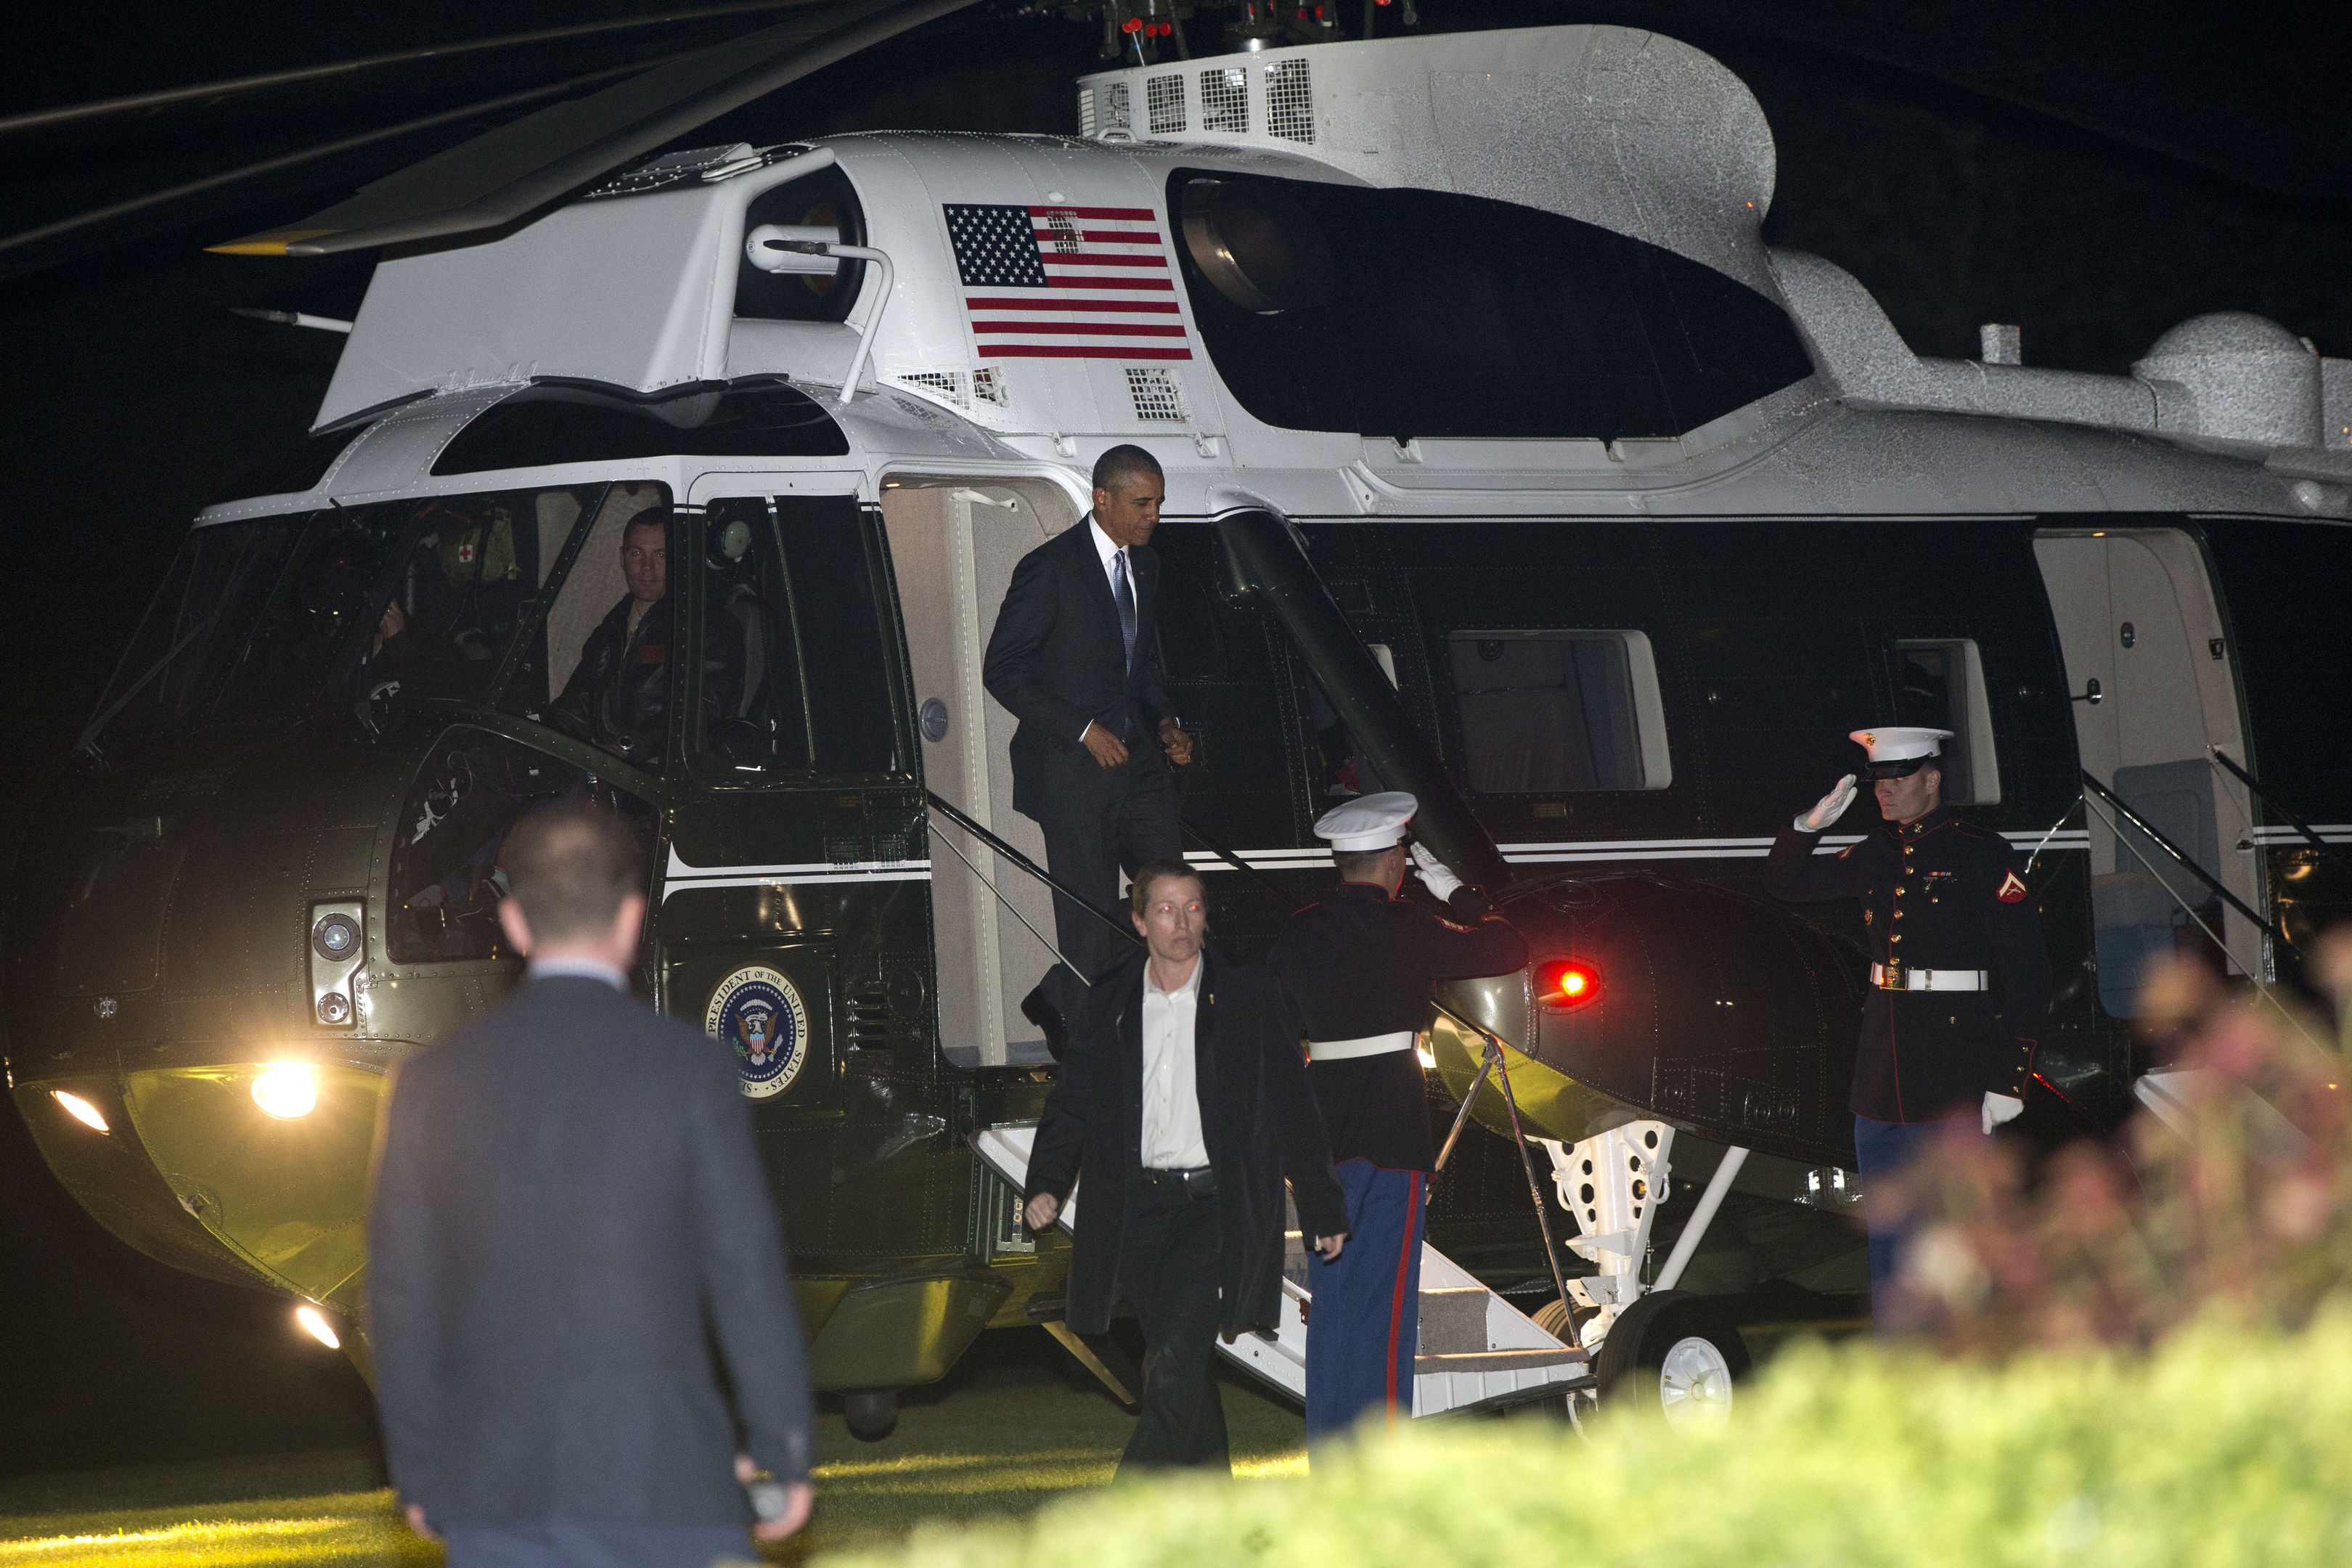 President Barack Obama arriving in London on Thursday evening.